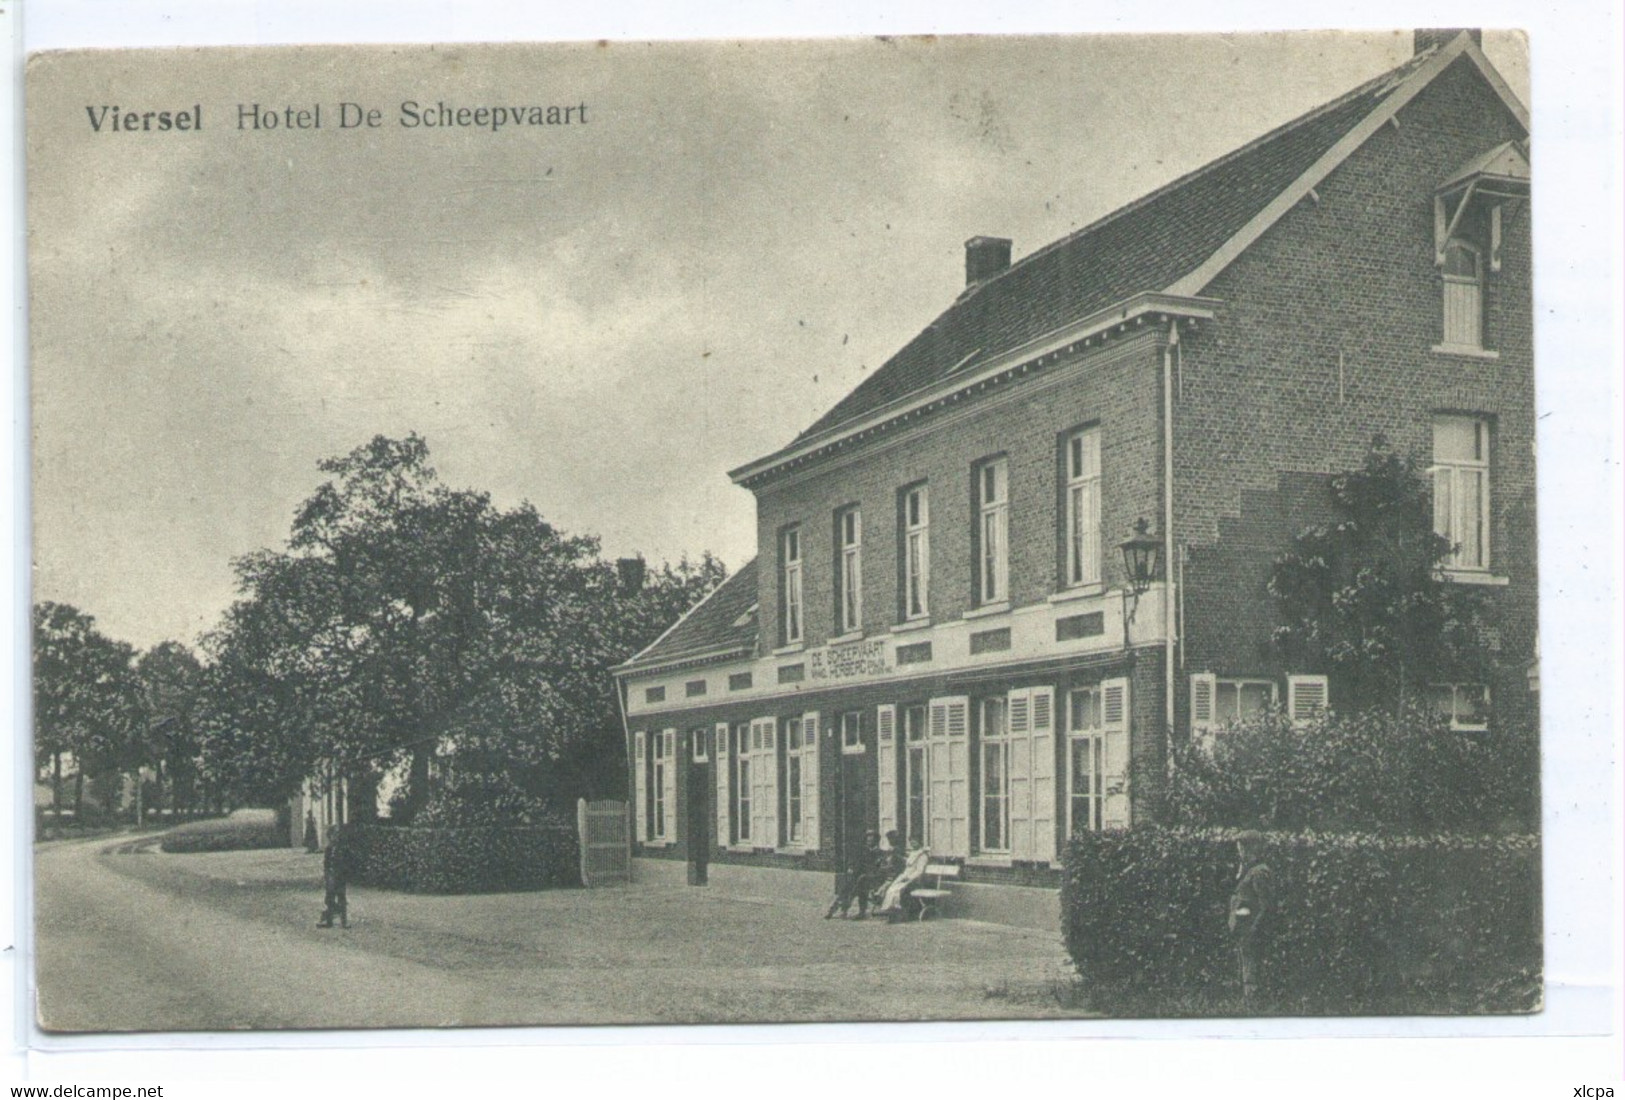 Viersel - Hotel De Scheepvaart - Zandhoven